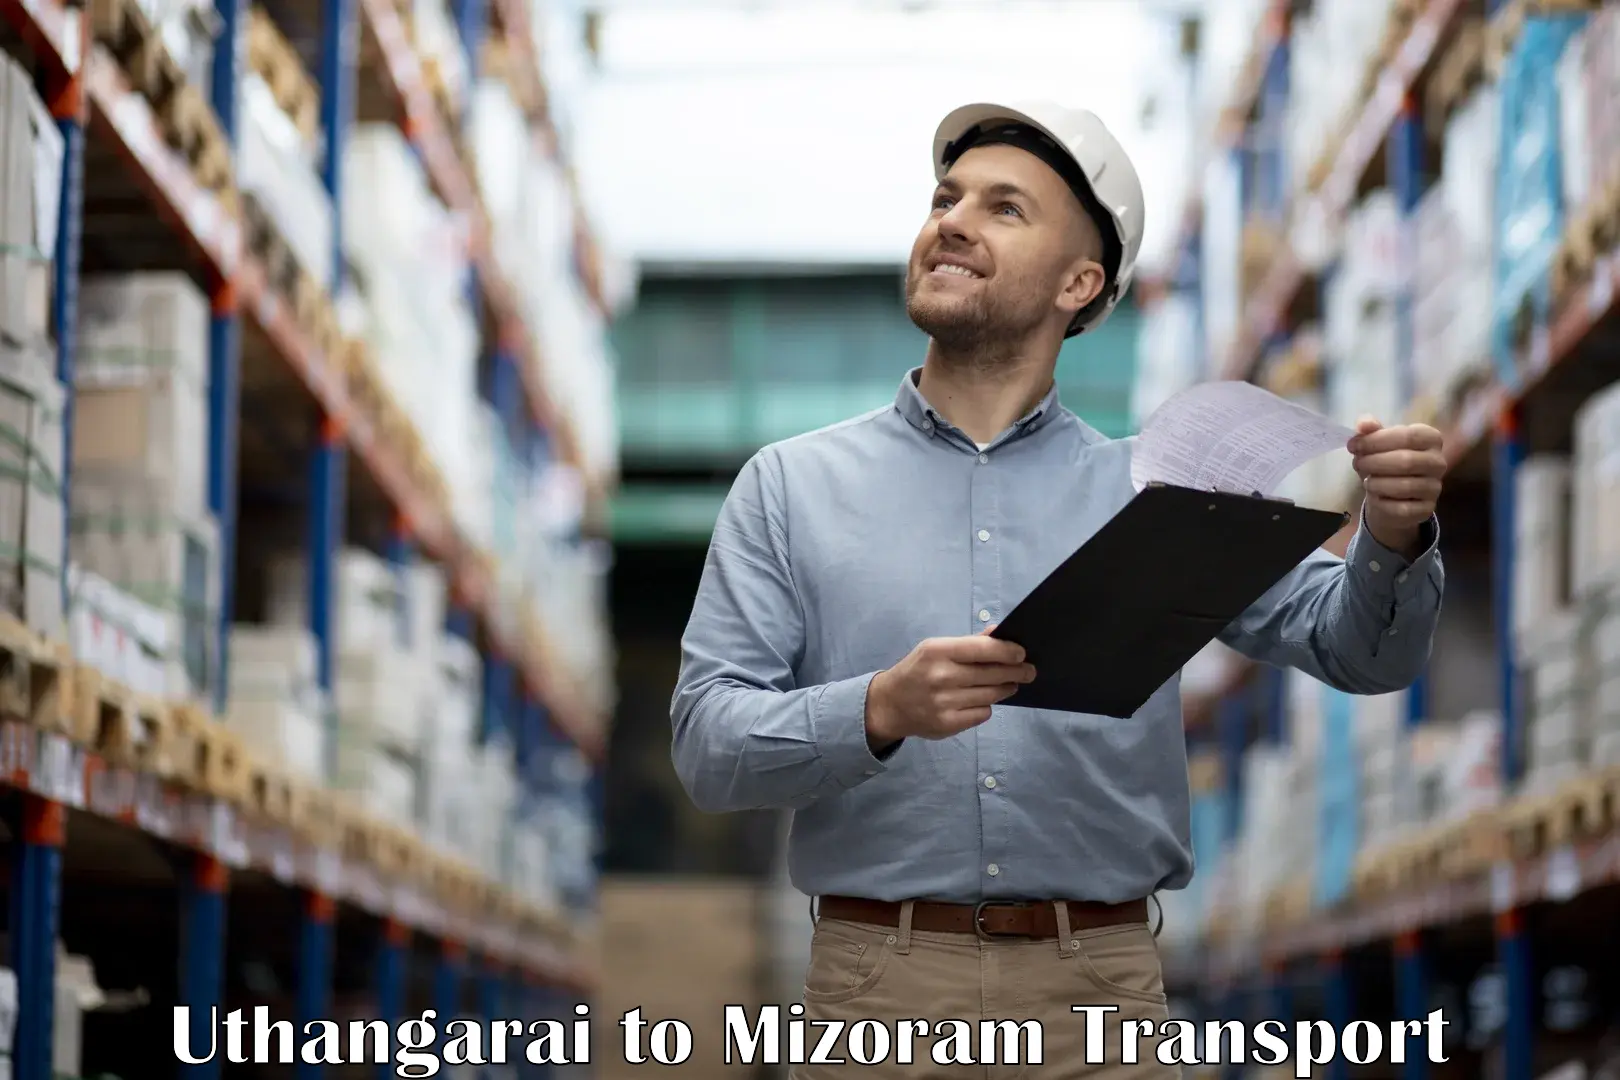 Transport in sharing Uthangarai to Mizoram